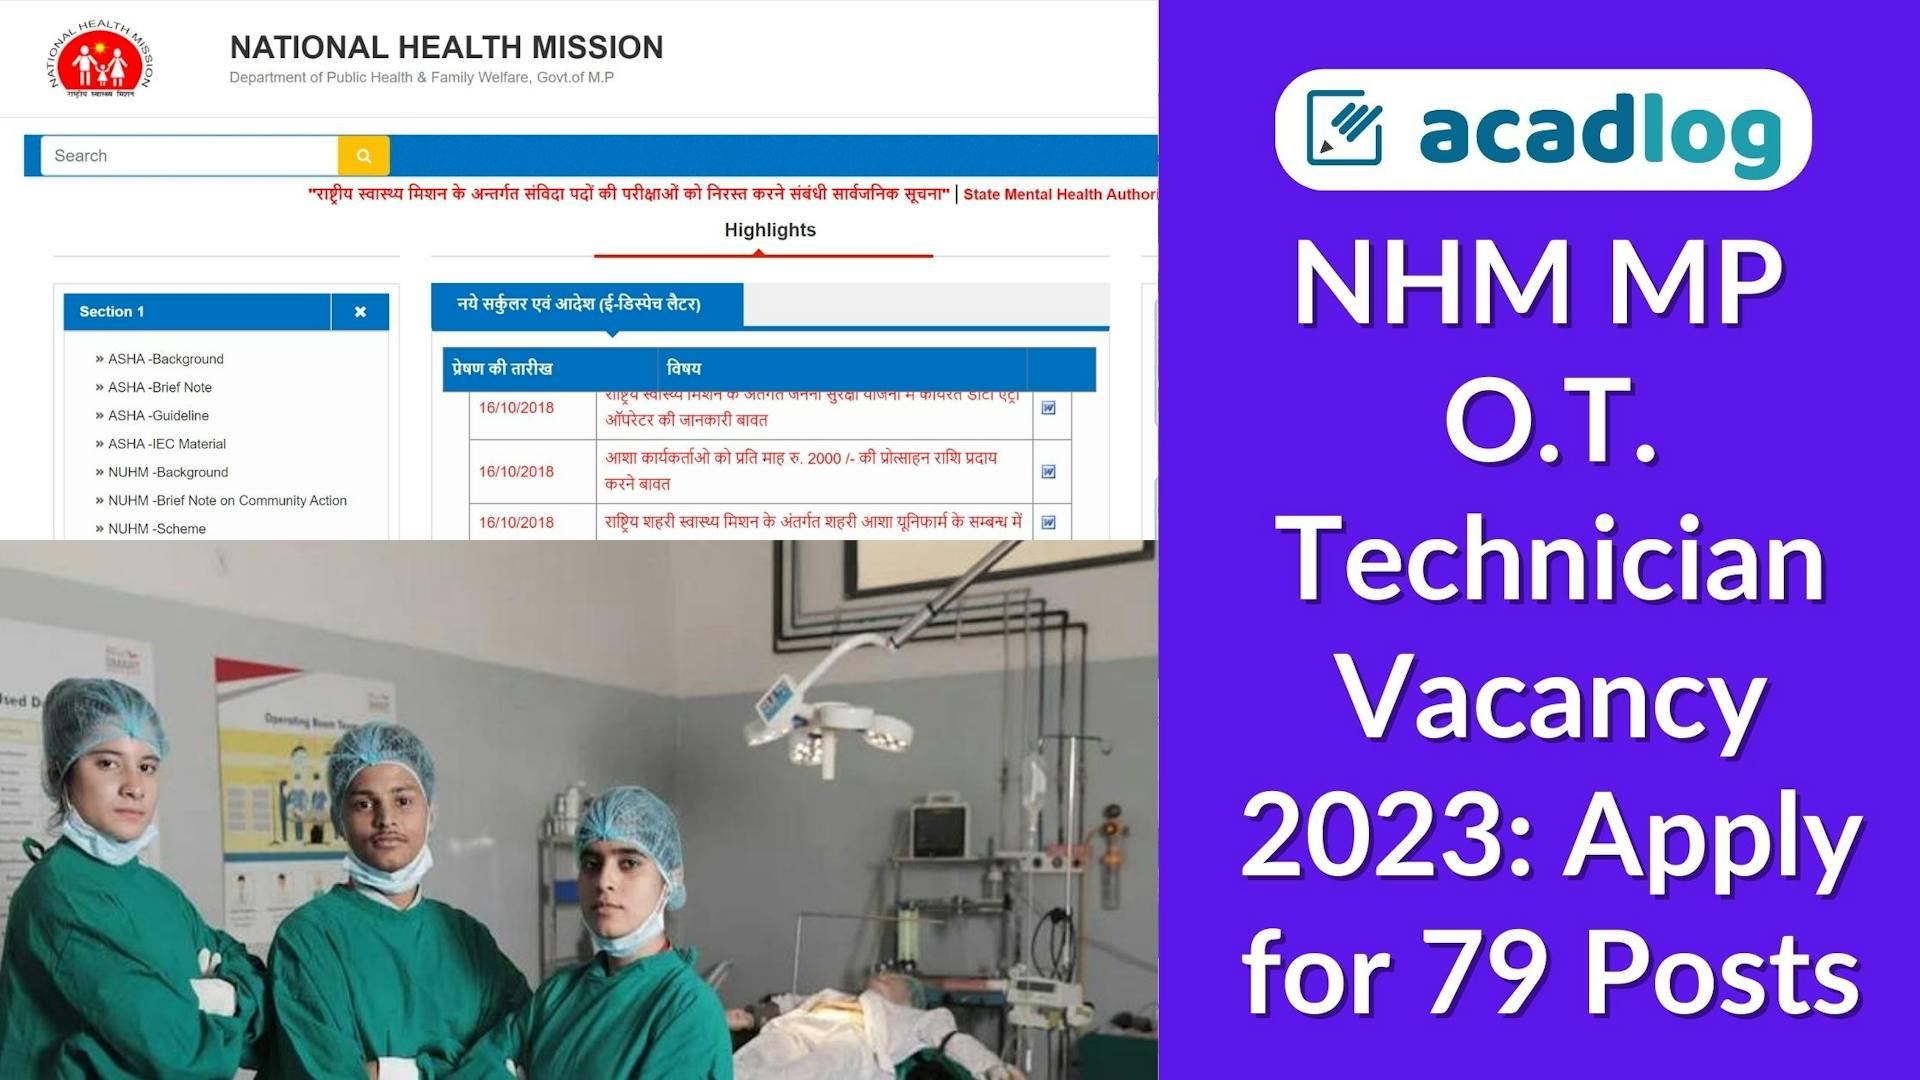 OT Technician Jobs 2023 NHM MP: Recruitment for 79 Vacancies